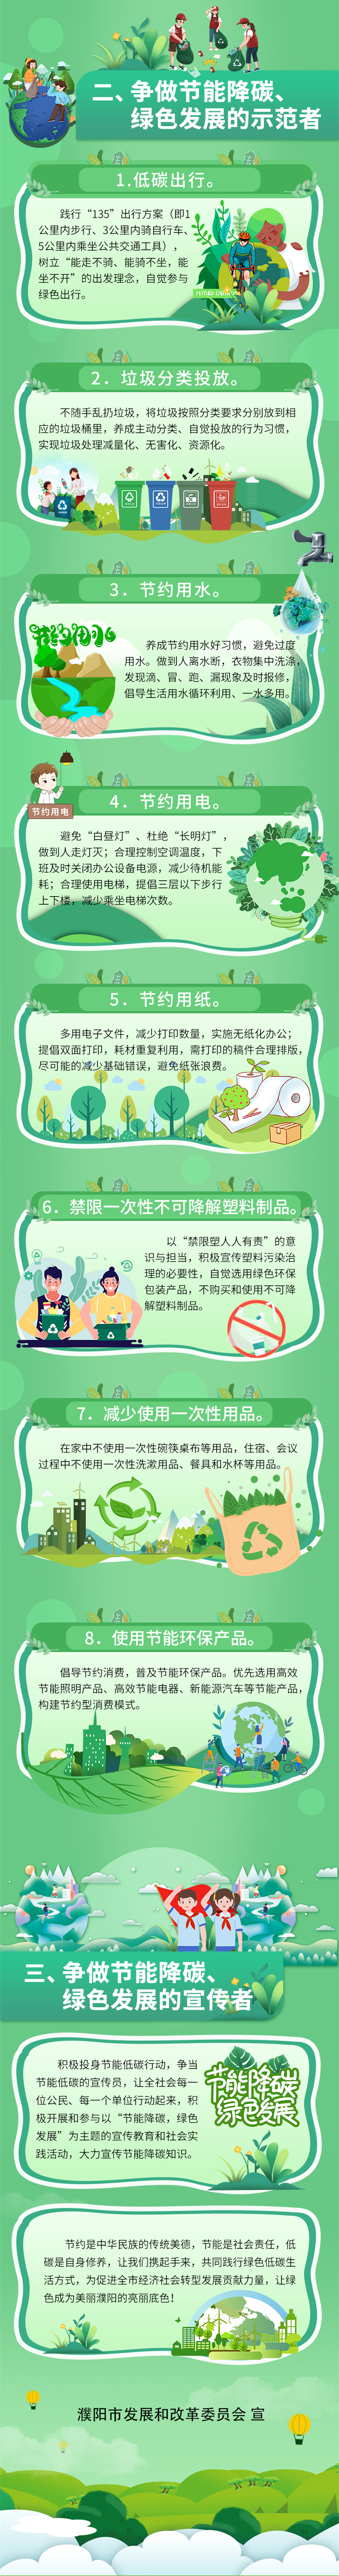 濮阳市发展改革委发布节能降碳、绿色发展倡议书